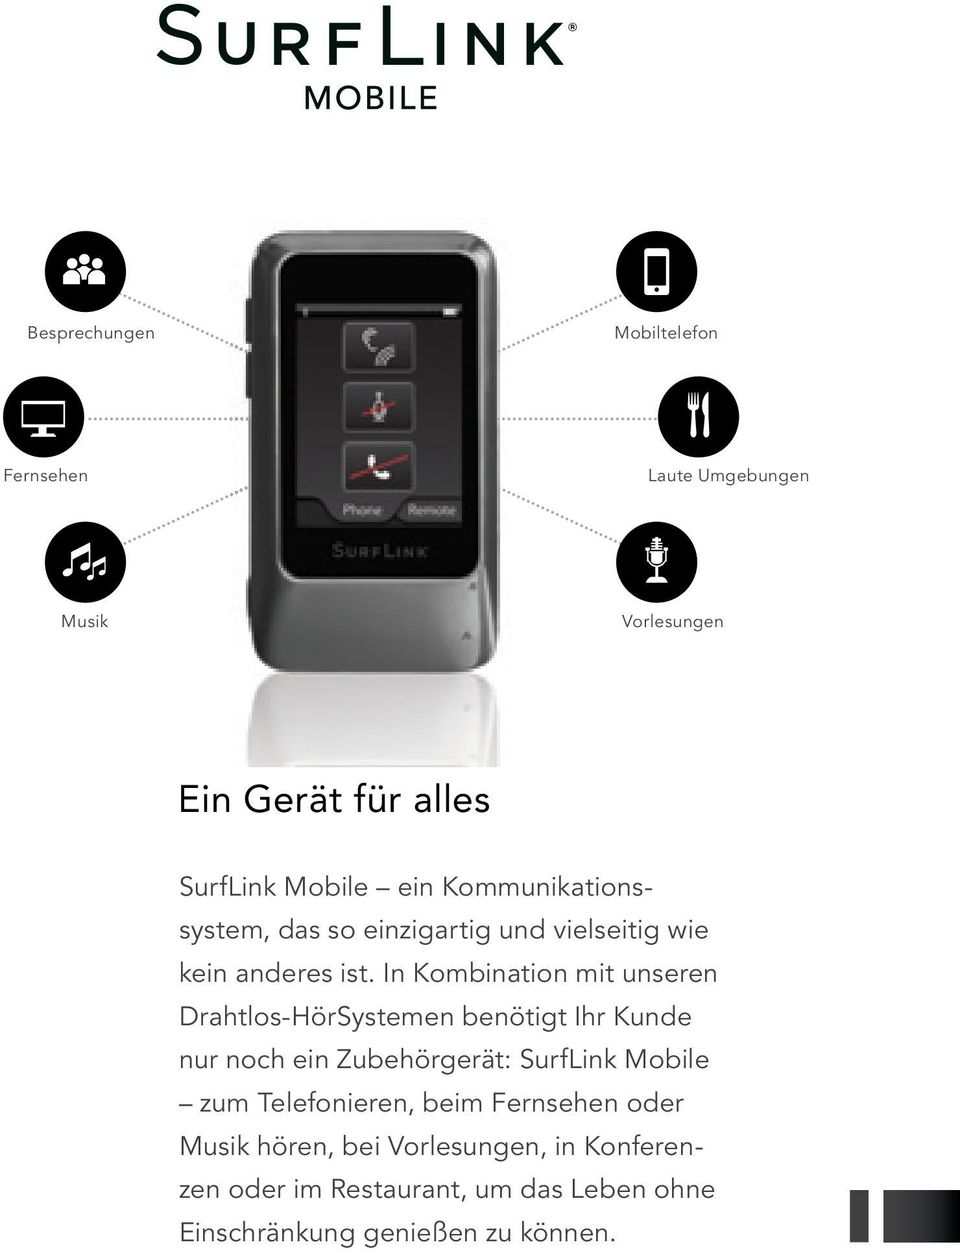 In Kombination mit unseren Drahtlos-HörSystemen benötigt Ihr Kunde nur noch ein Zubehörgerät: SurfLink Mobile zum